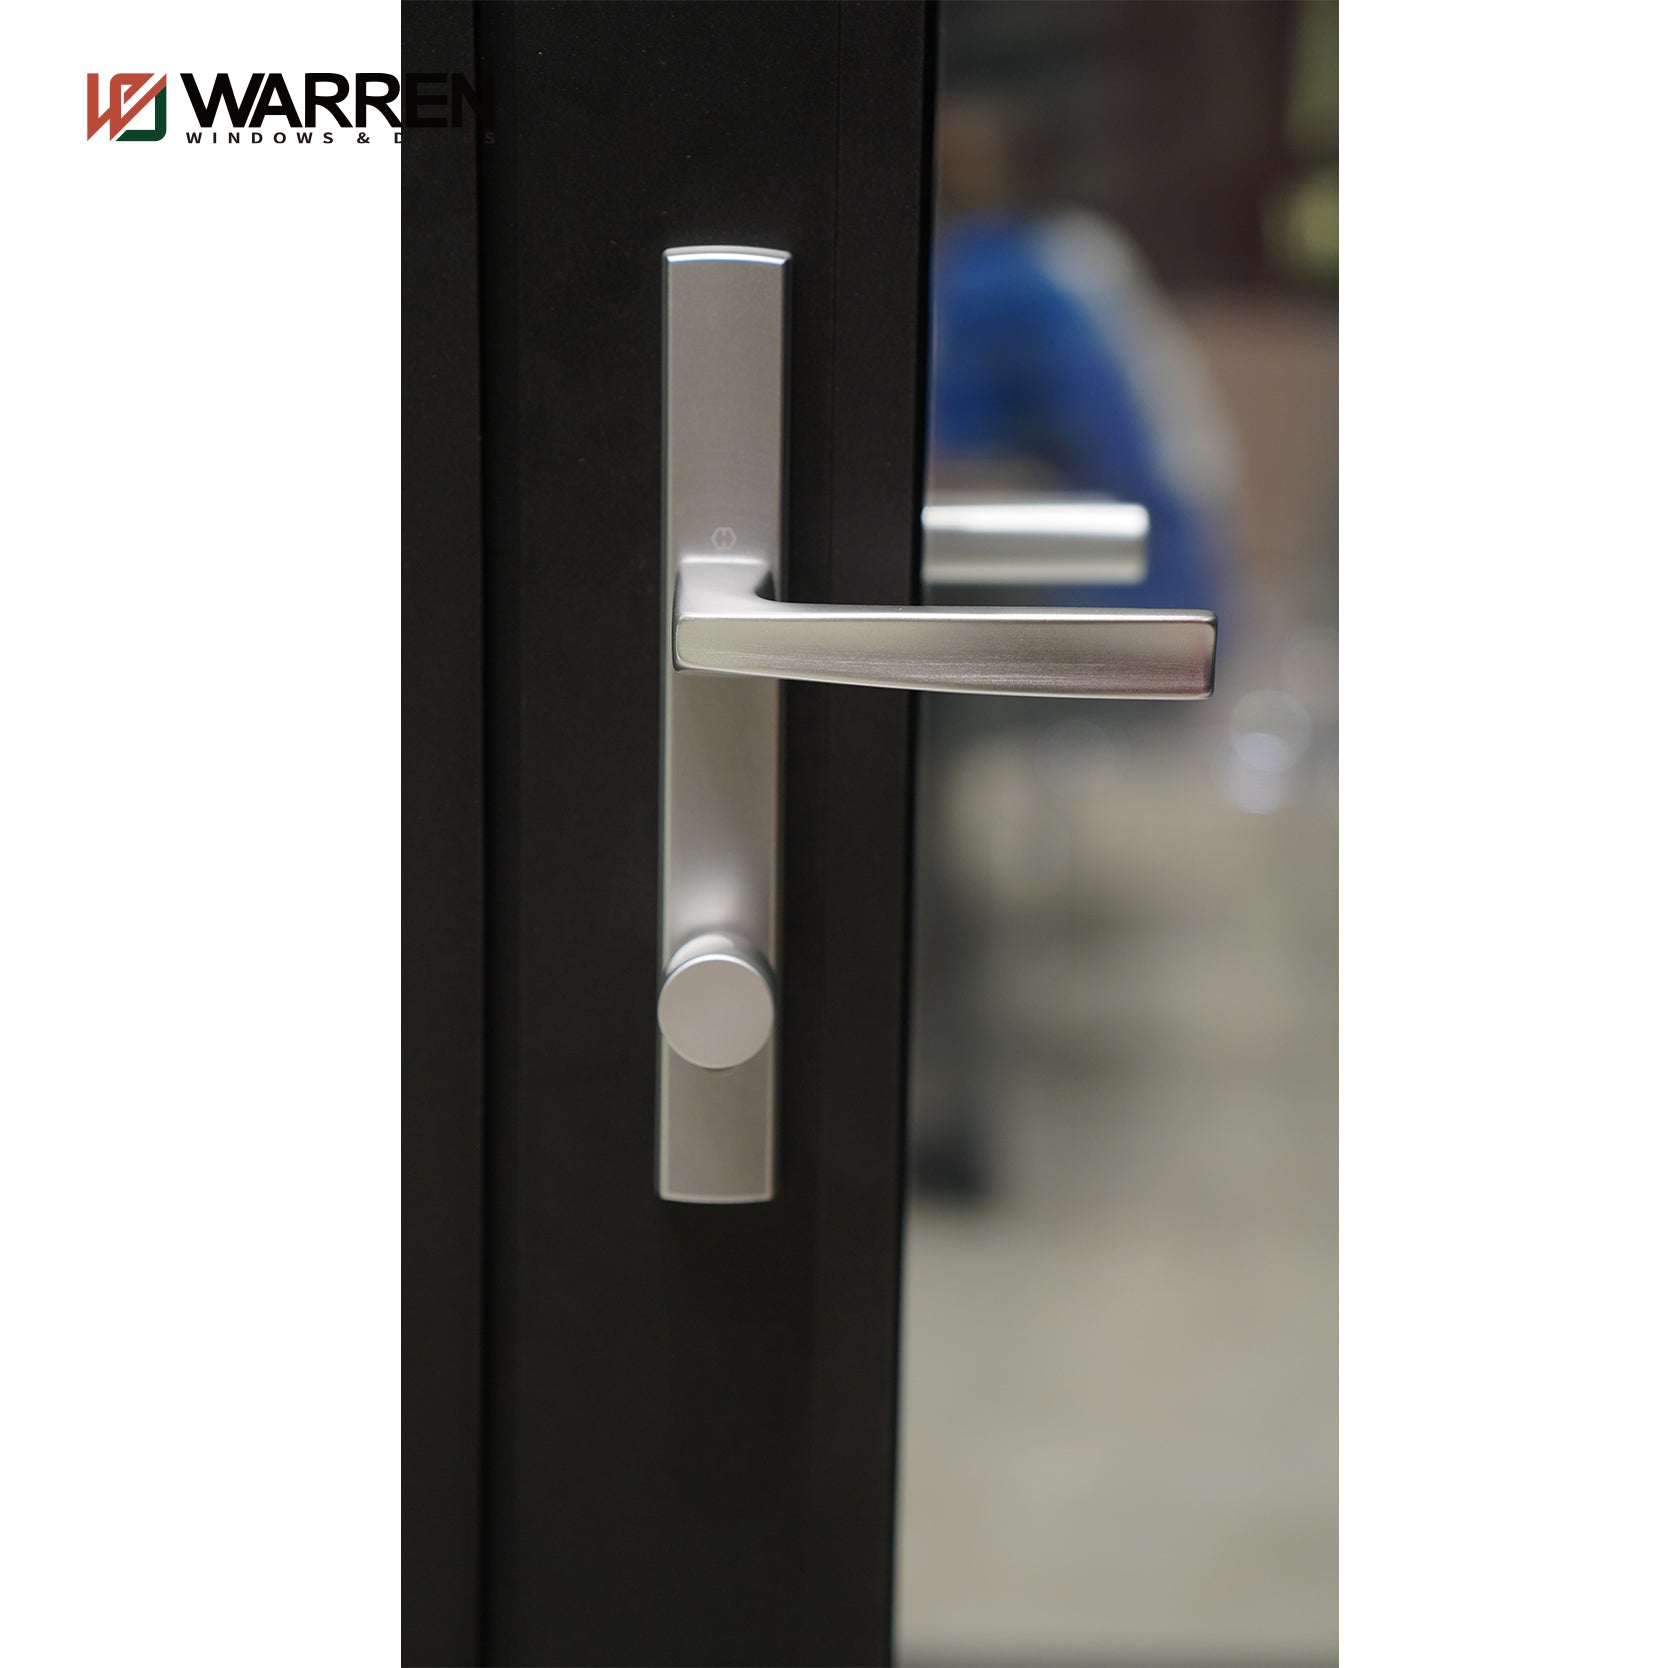 Warren Factory Custom French Doors Exterior Casement Patio Door French Glass Aluminum Bifold Doors